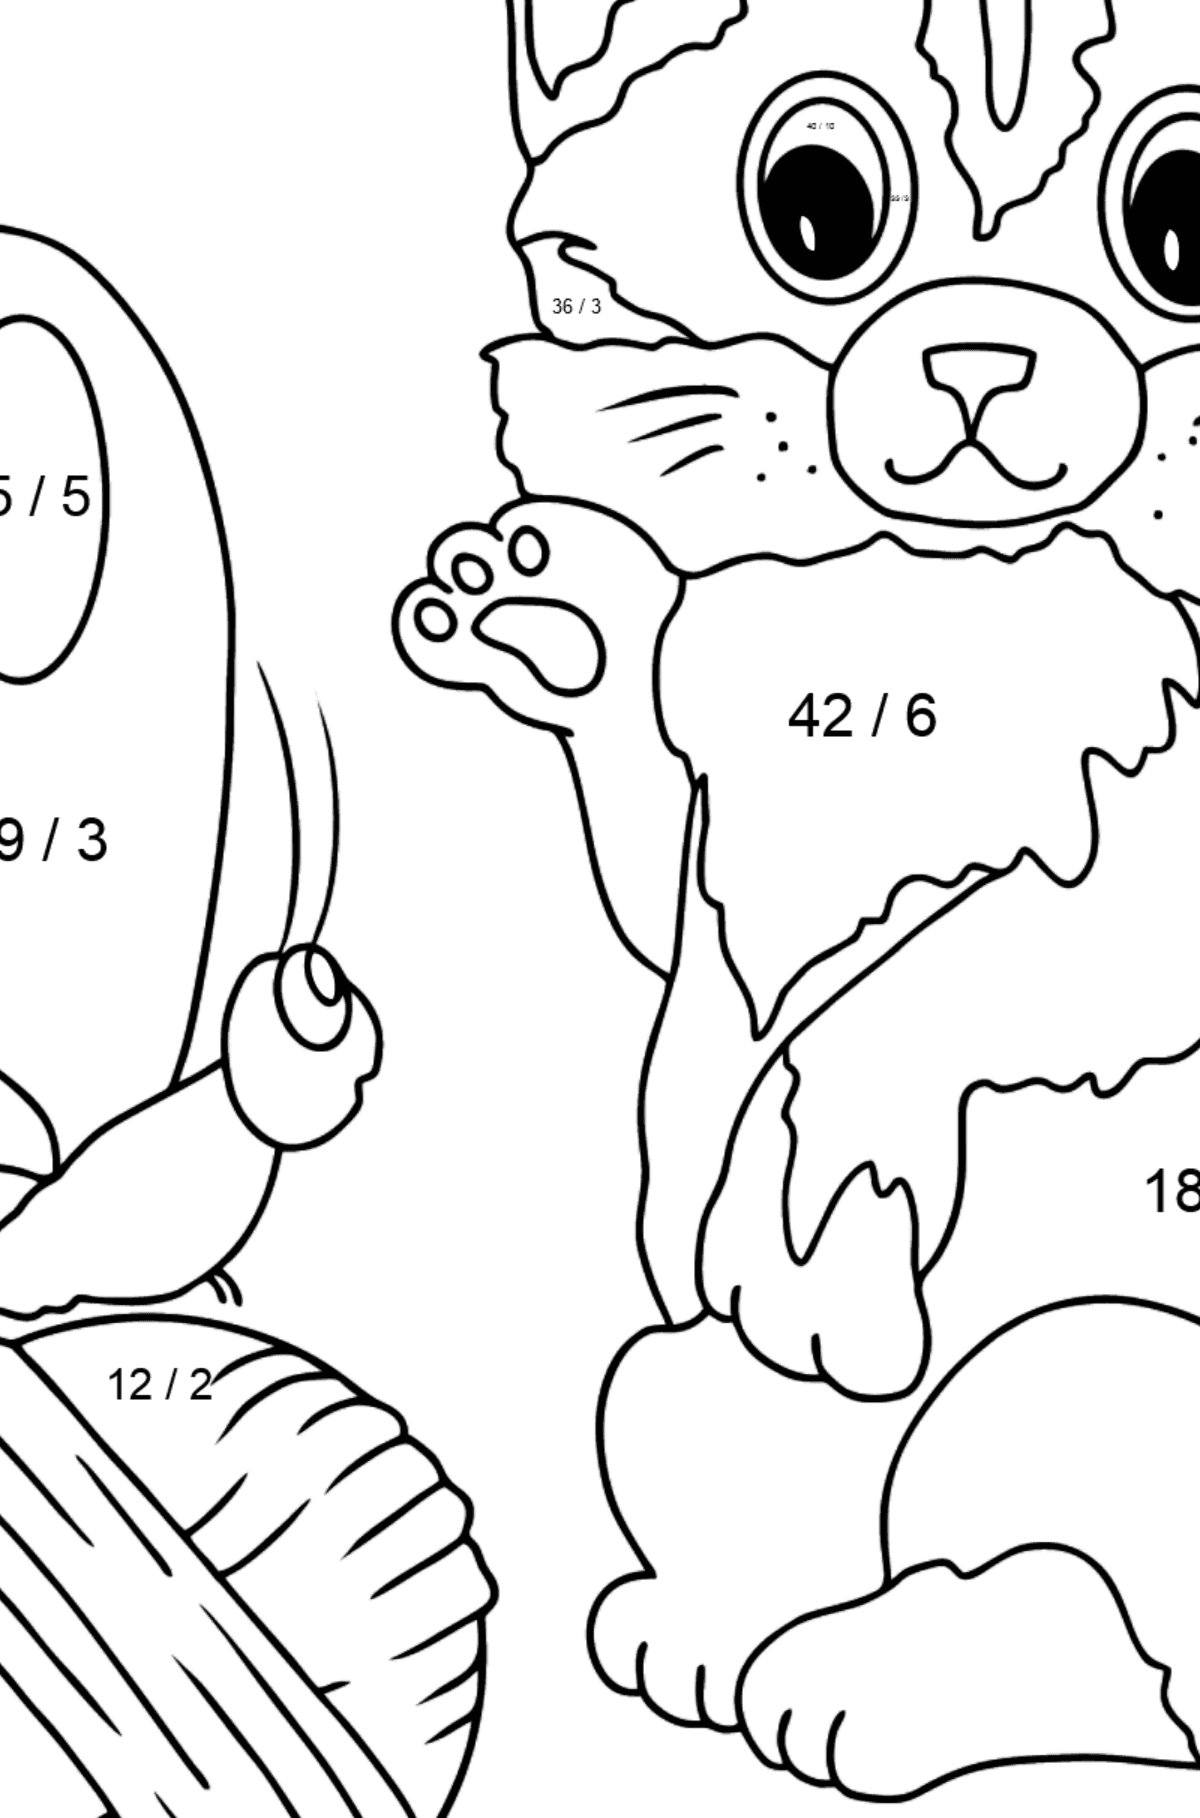 Disegno da colorare di gattino - Colorazione matematica - Divisione per bambini